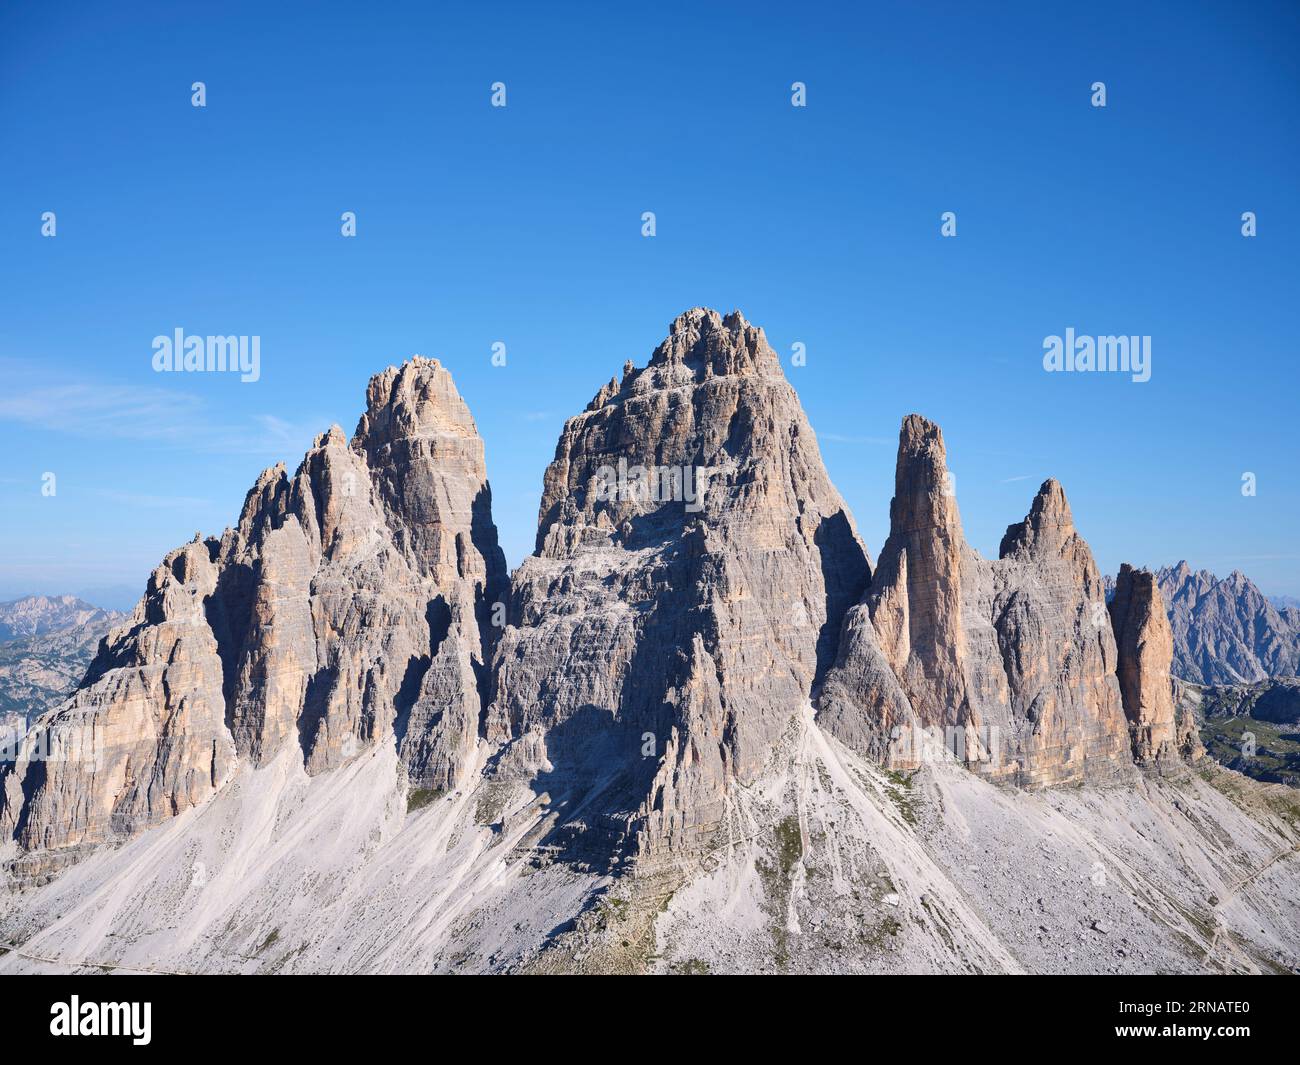 LUFTAUFNAHME. Die nach Süden ausgerichtete Seite des berühmten Tre Cime di Lavaredo (Höhe: 2999 Meter). Auronzo di Cadore, Provinz Belluno, Venetien, Italien. Stockfoto